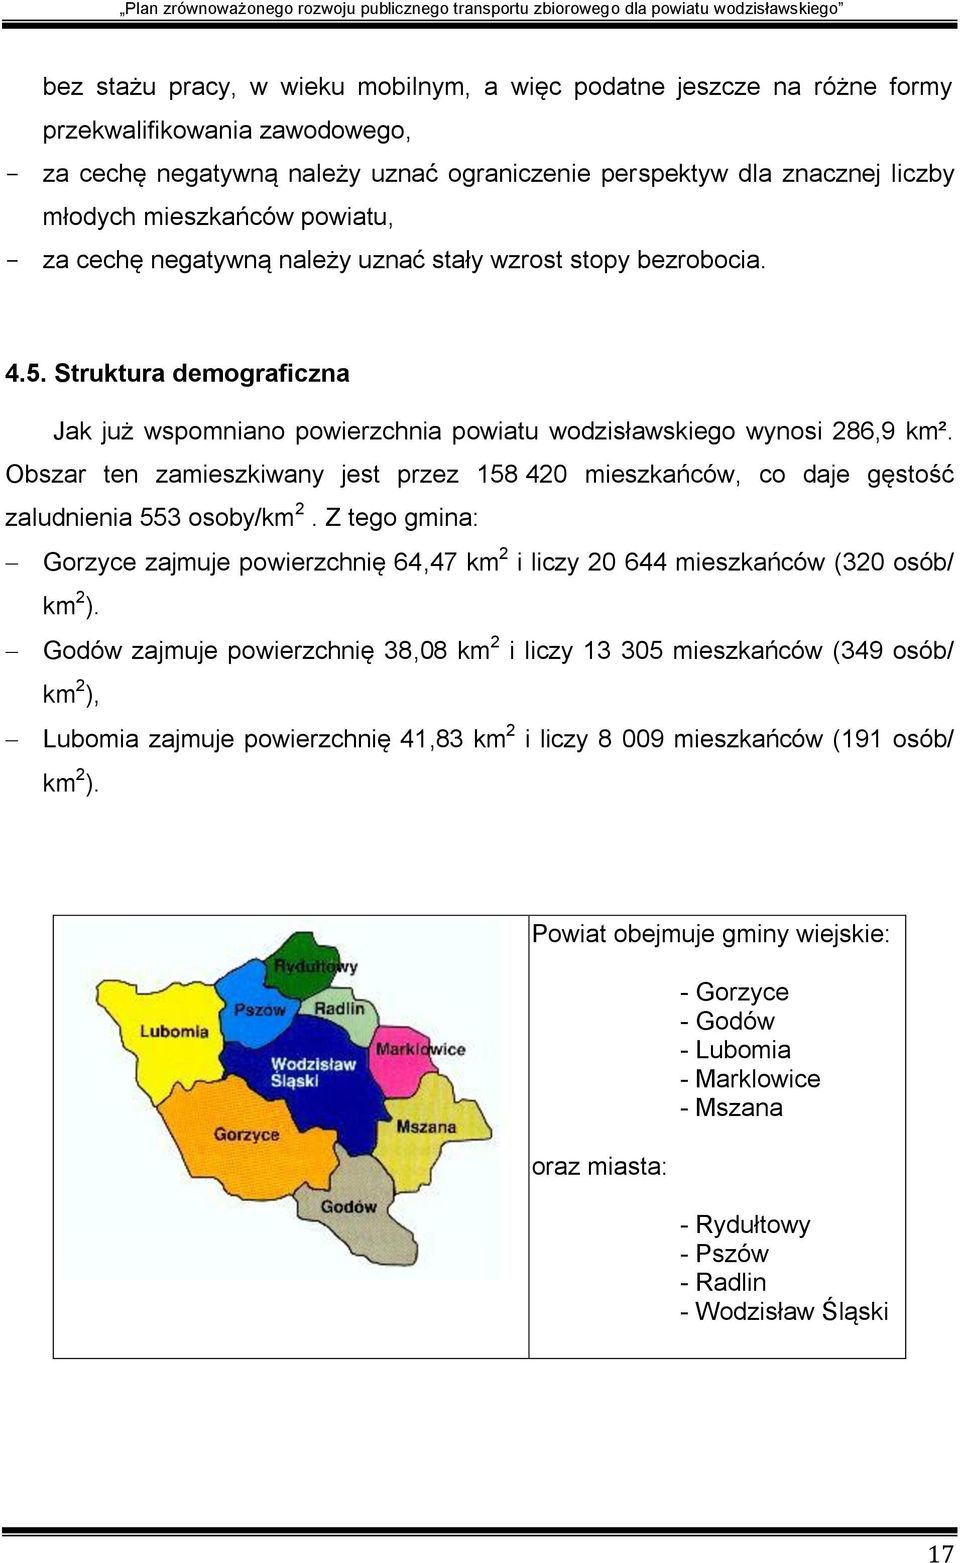 Obszar ten zamieszkiwany jest przez 158 420 mieszkańców, co daje gęstość zaludnienia 553 osoby/km 2. Z tego gmina: Gorzyce zajmuje powierzchnię 64,47 km 2 i liczy 20 644 mieszkańców (320 osób/ km 2 ).